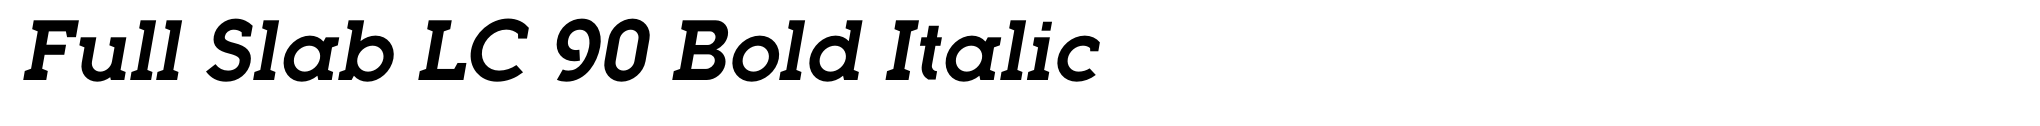 Full Slab LC 90 Bold Italic image